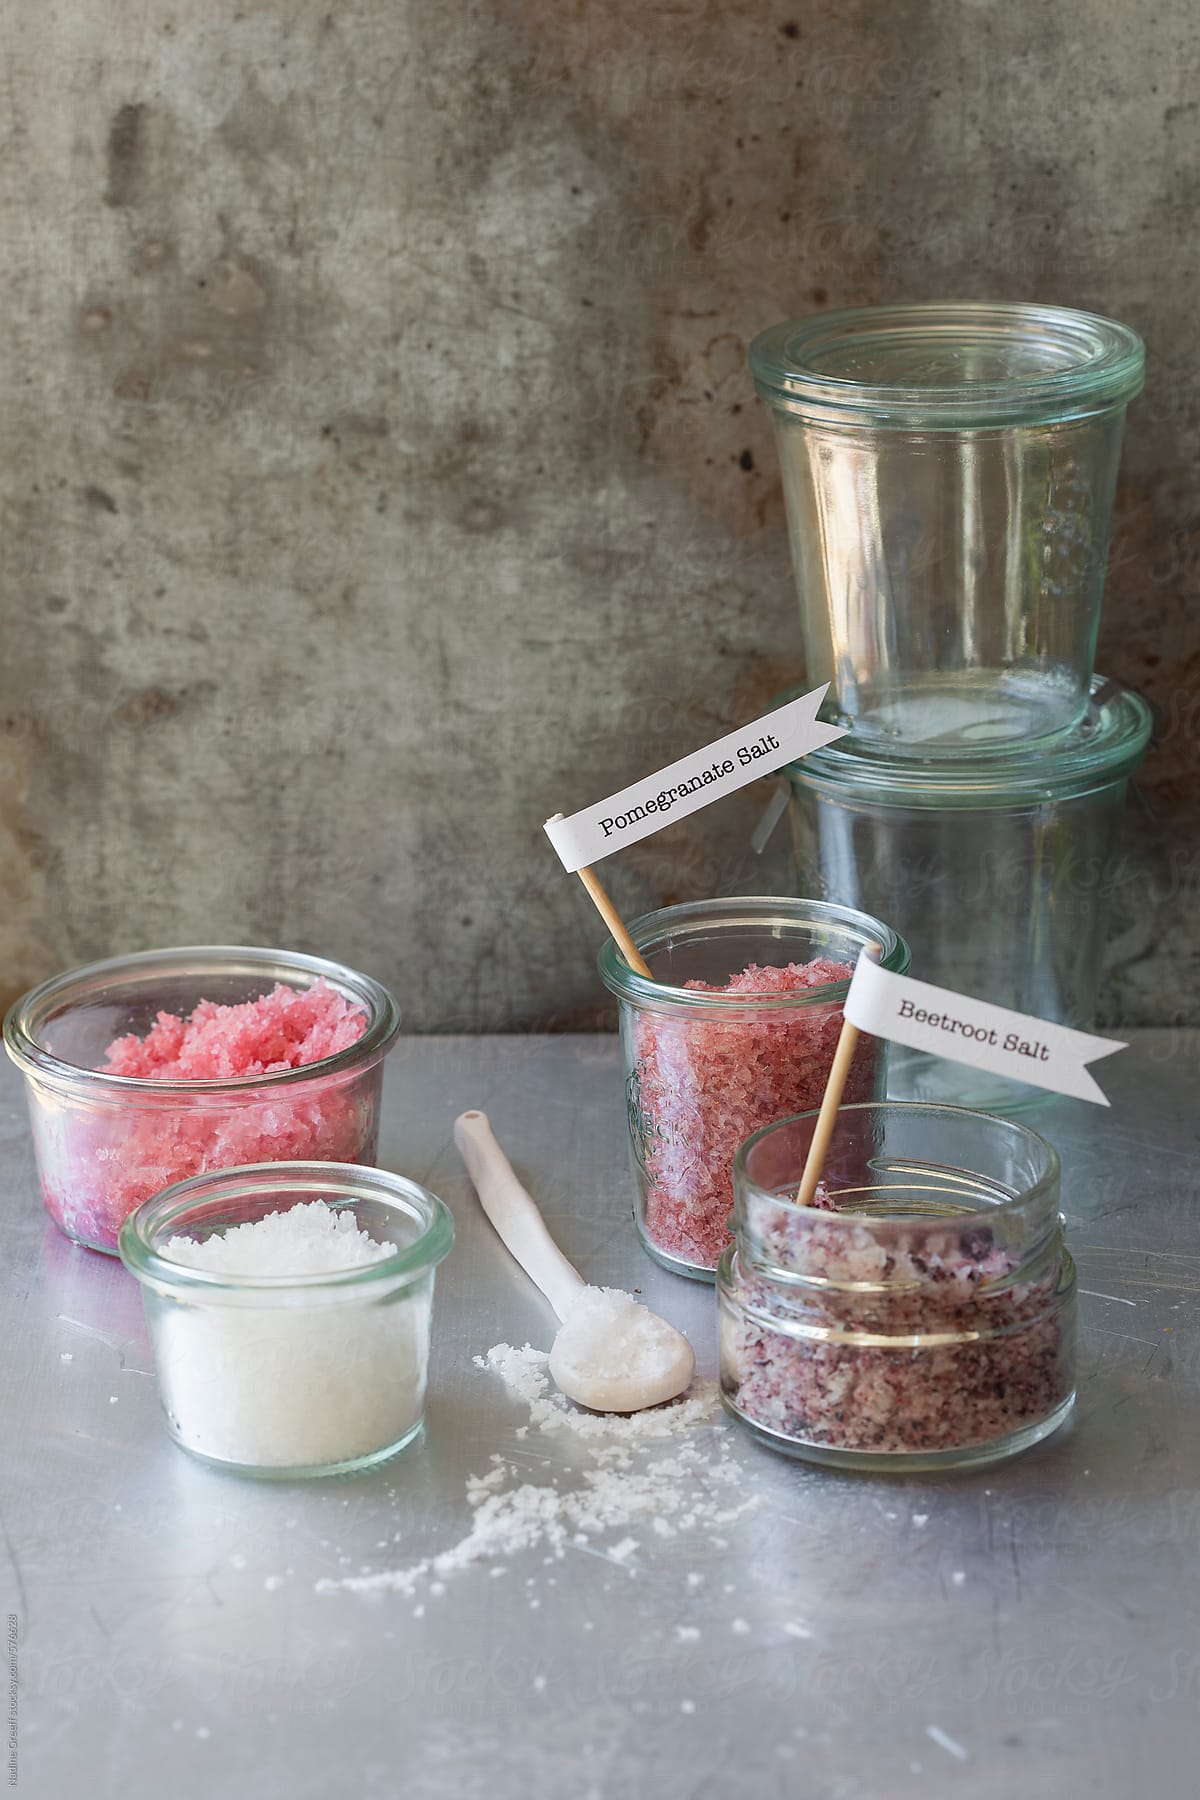 Salt: Beetroot salt, pomegranate salt and white salt in glass pots